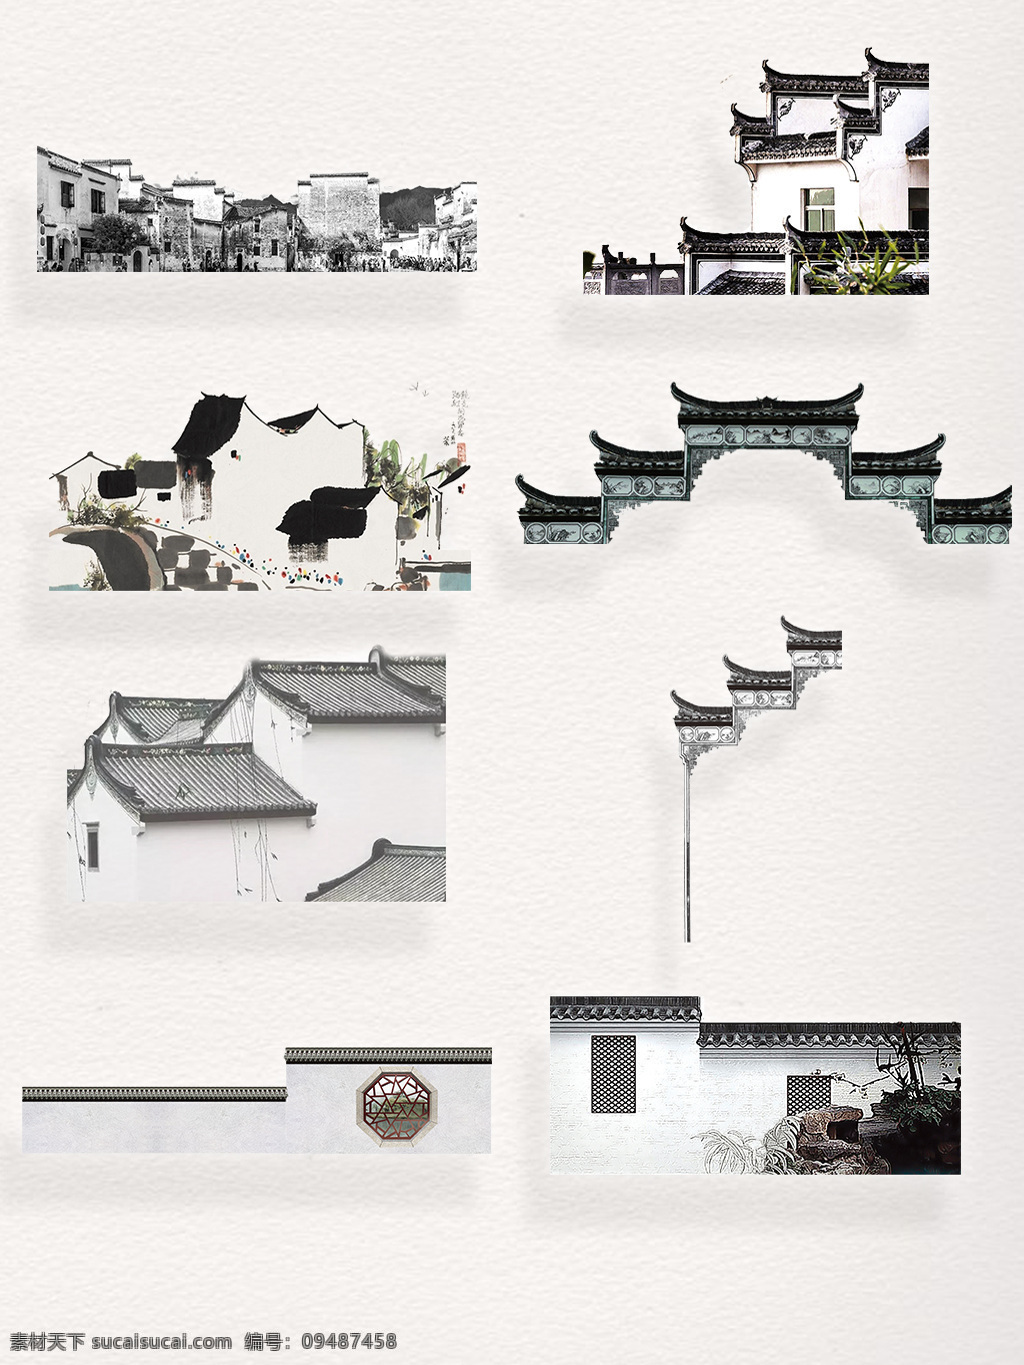 中国 江山 水乡 黑 白色 徽派 建筑装饰 图案 黑白色 建筑 江南 街道 墙面 装饰图案